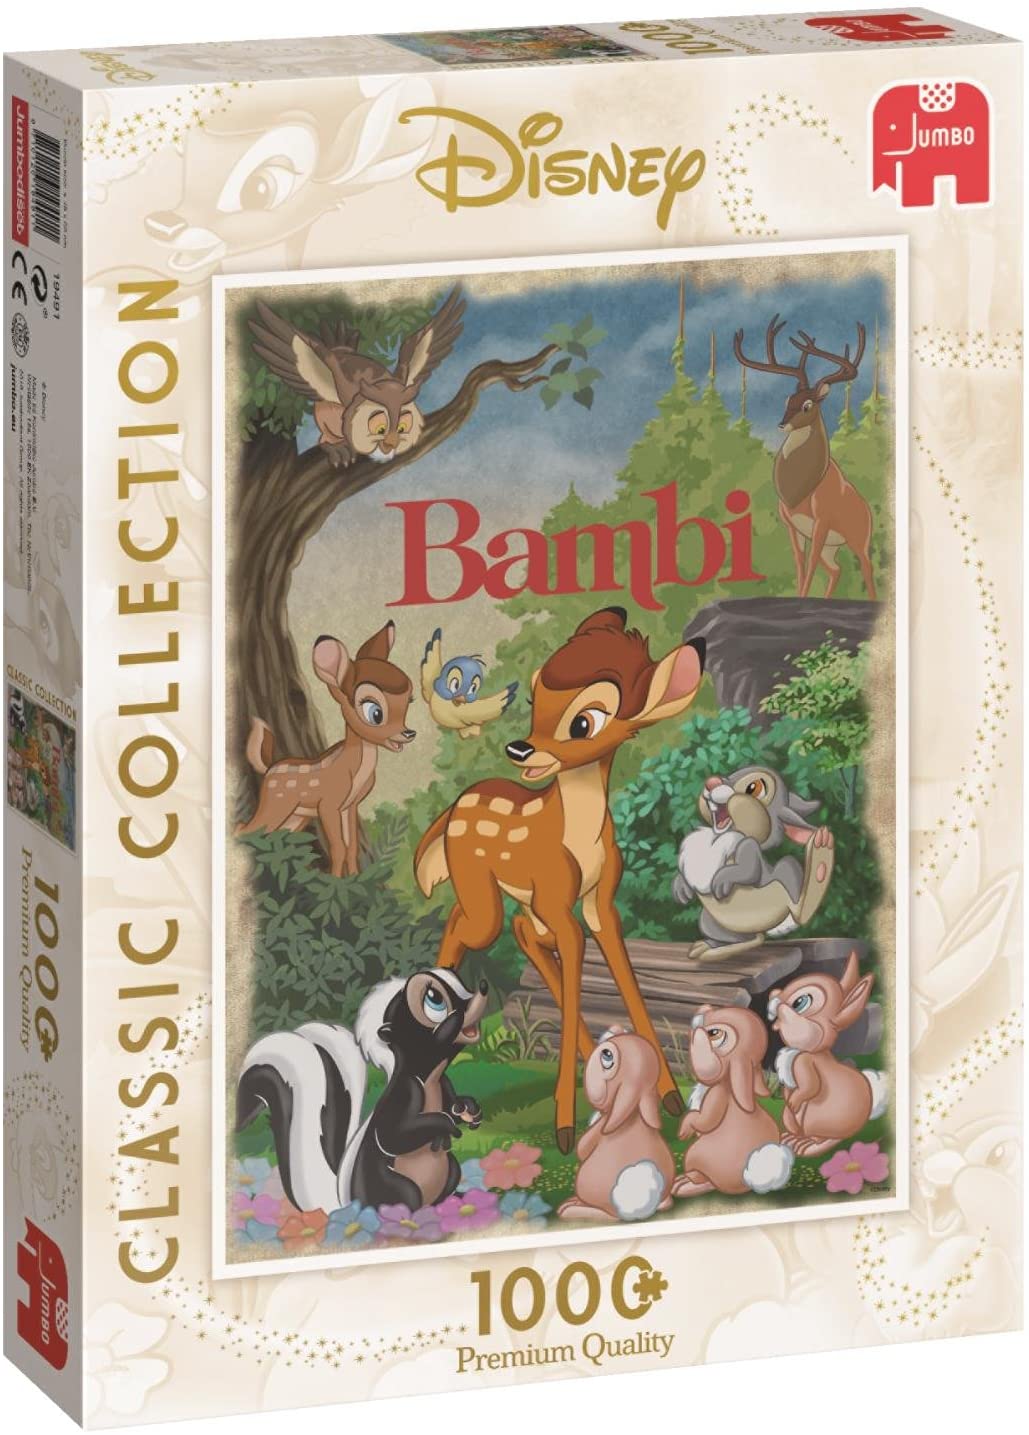 Bambi af Disney, 1000 brikker puslespil